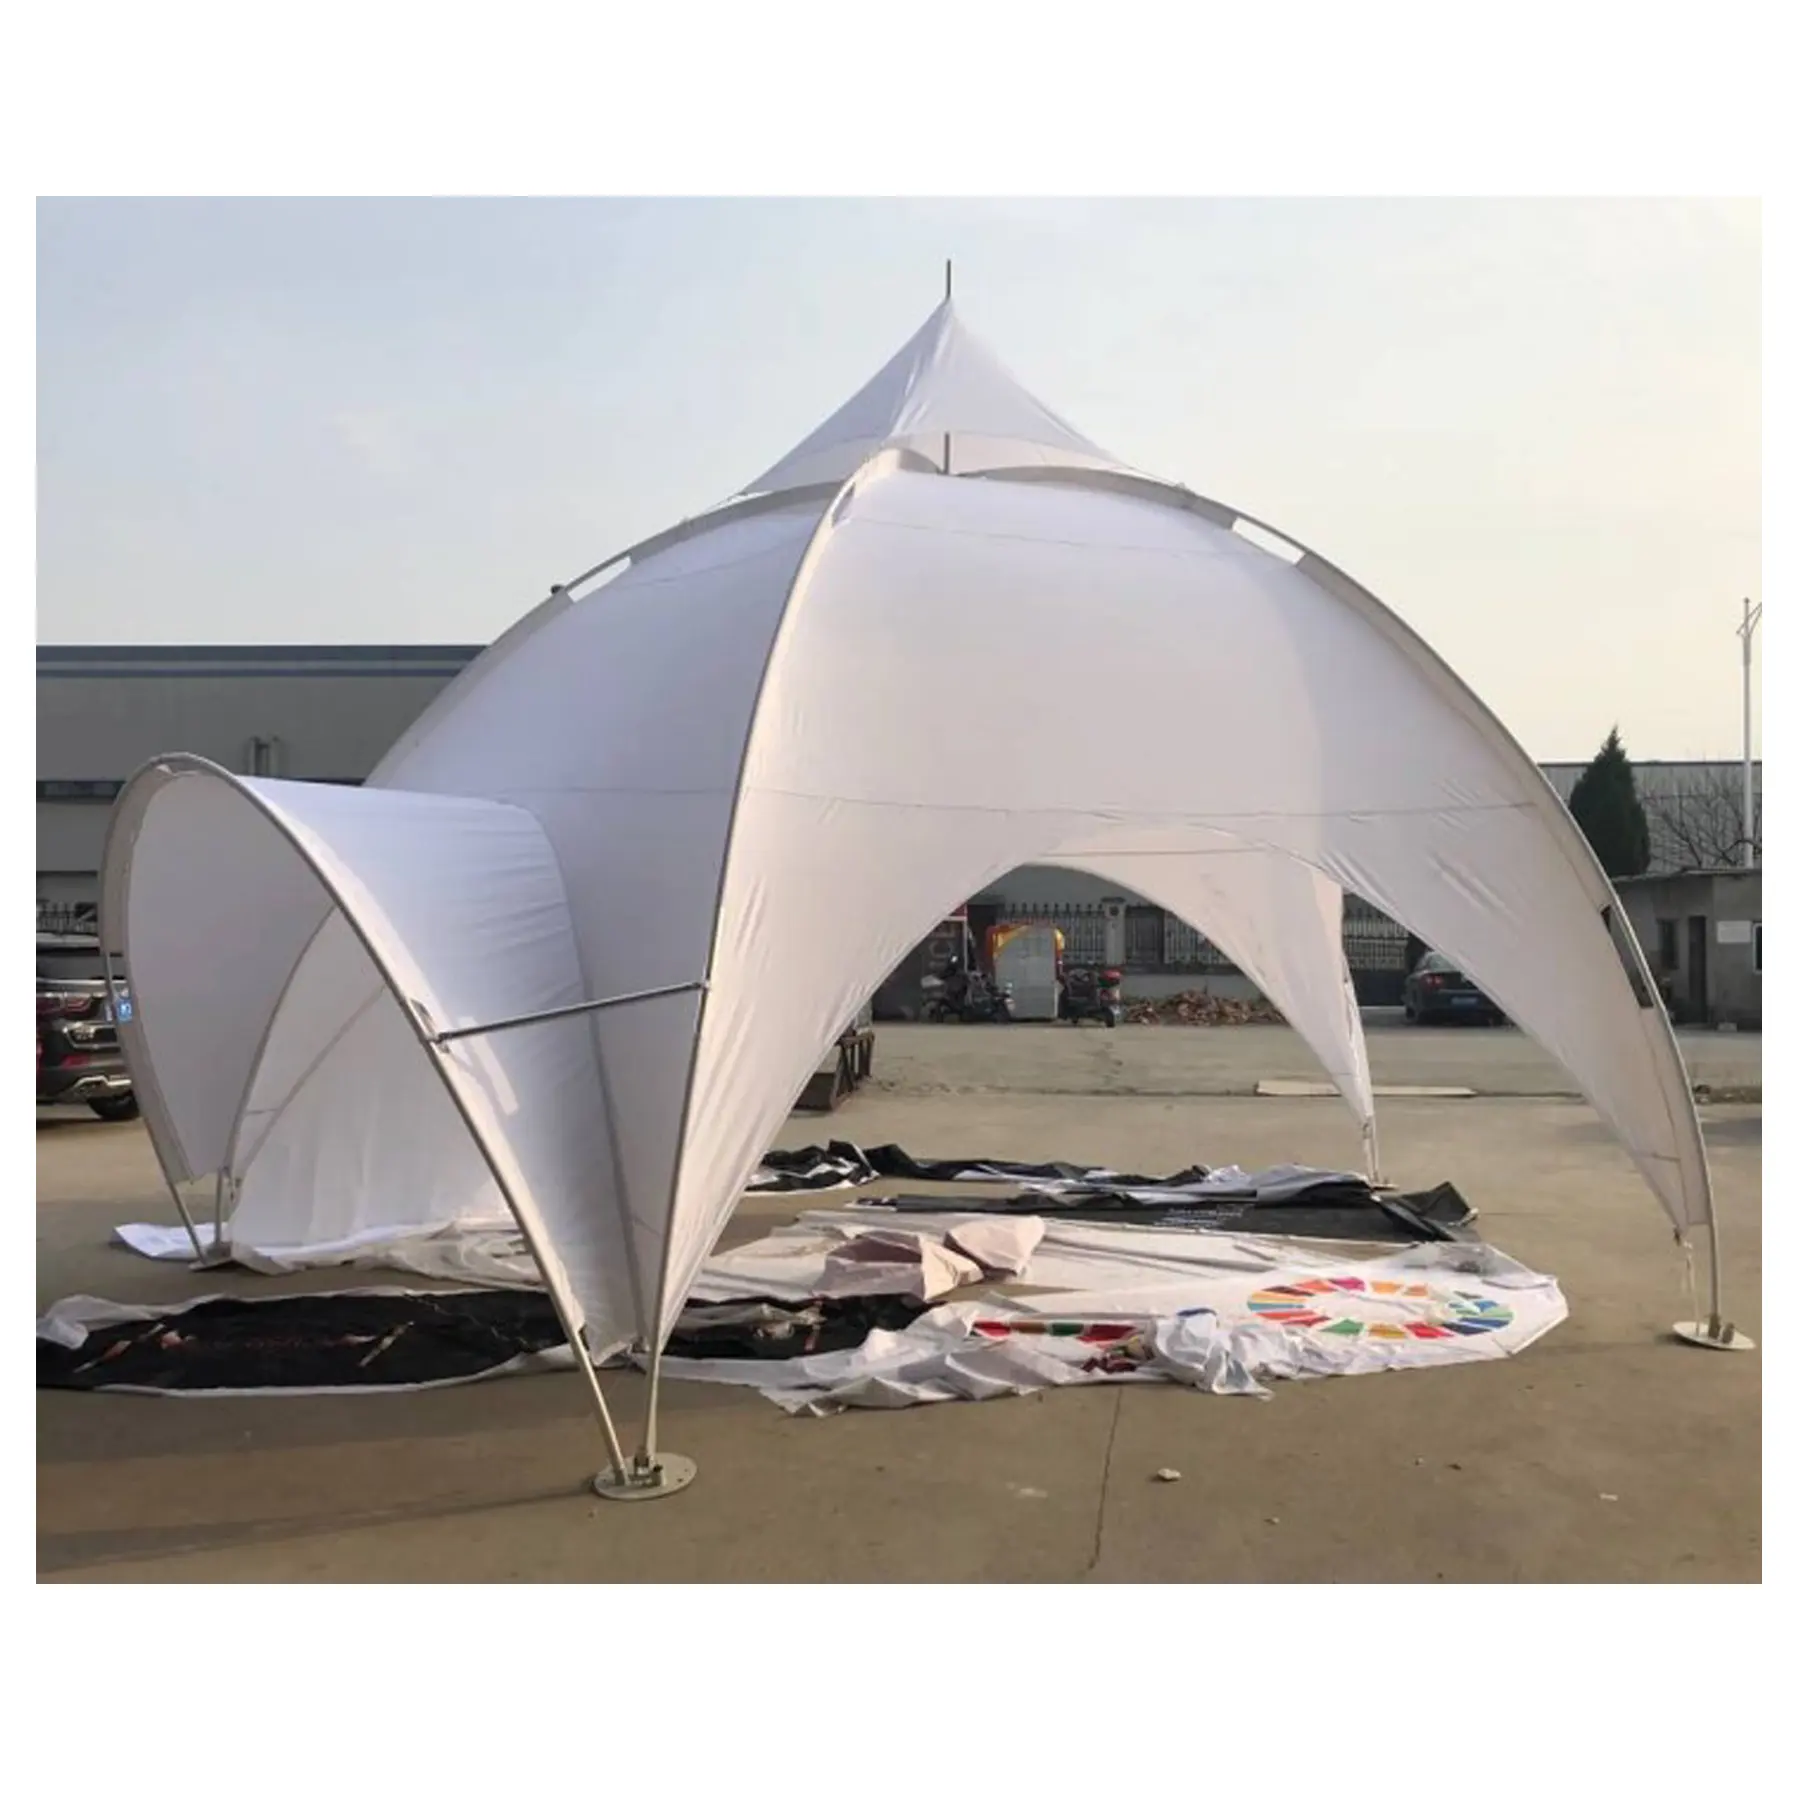 Weiß Werbung Dome Zelte, Fünfeckigen Arch Spinne Zelt Mit Bogen und Wände